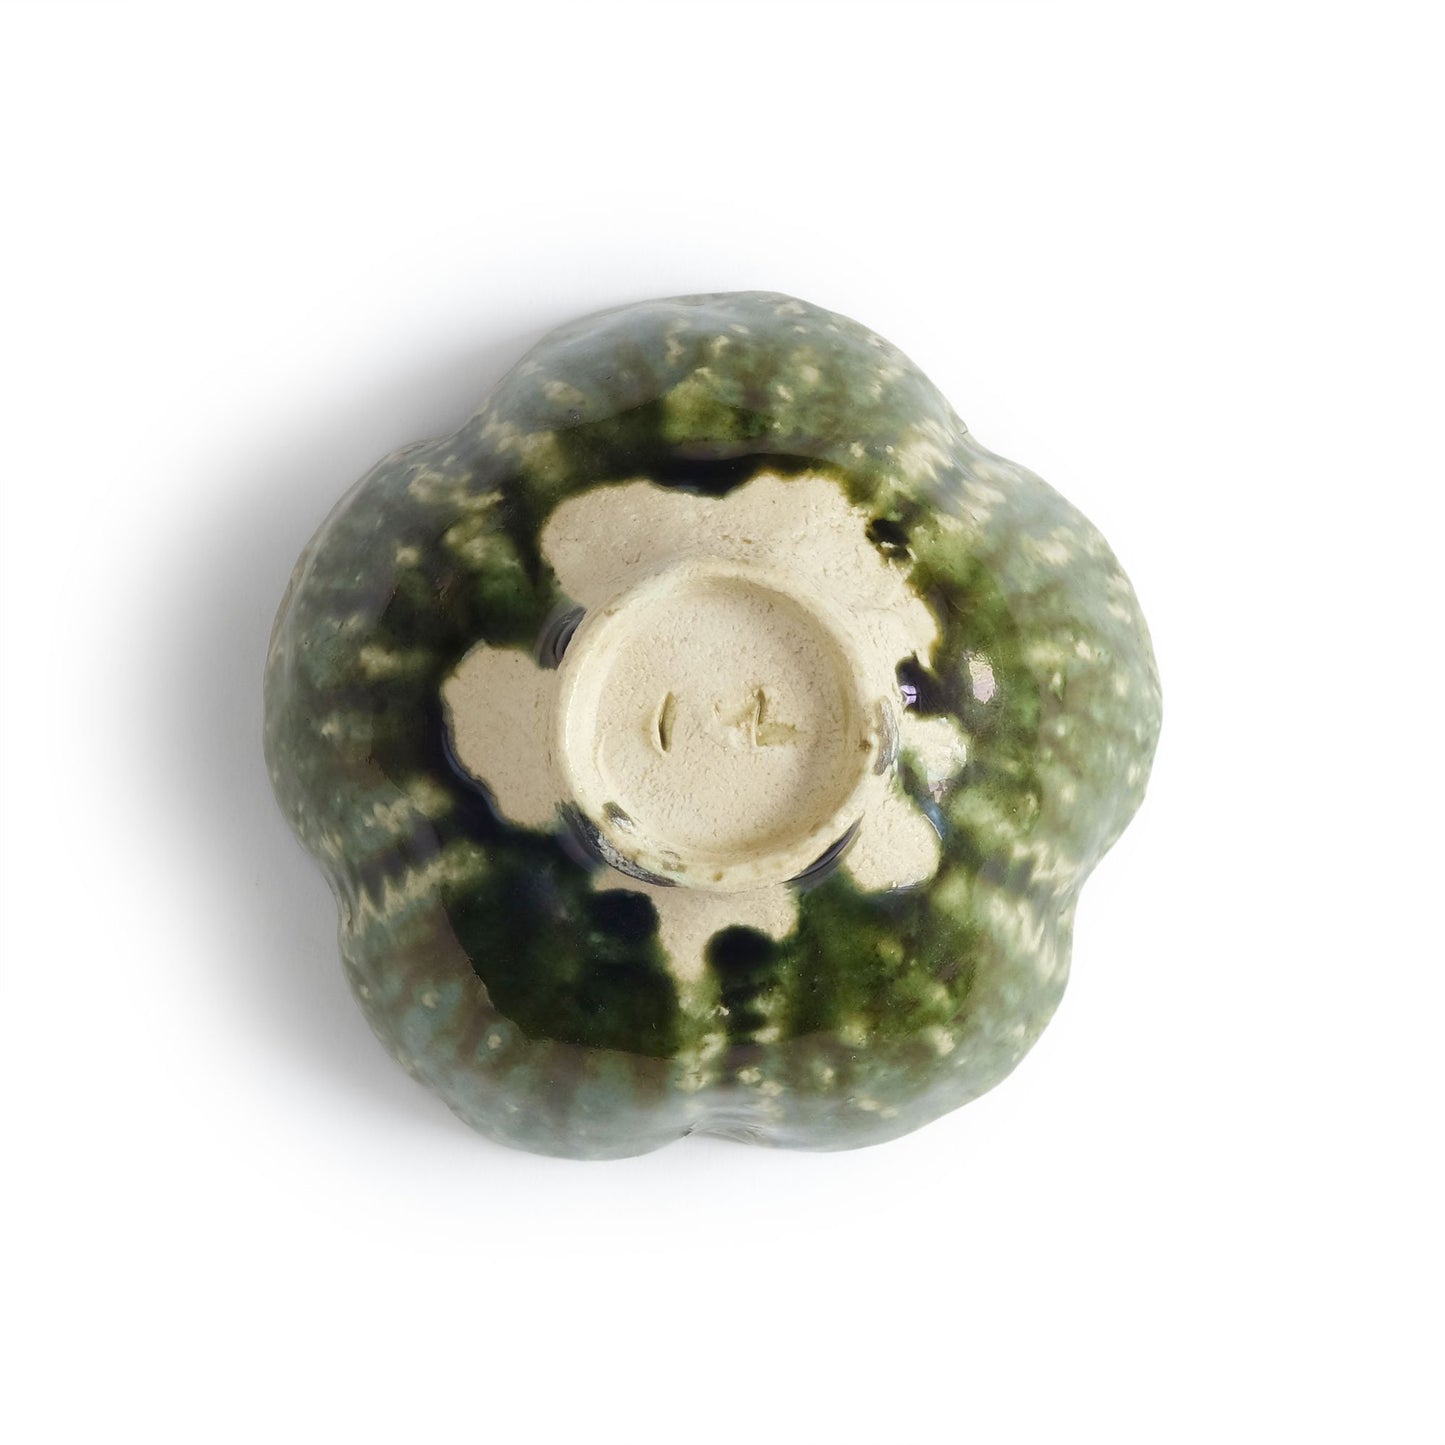 Hiroshi Hanzawa Flower Shaped Small bowl Oribe